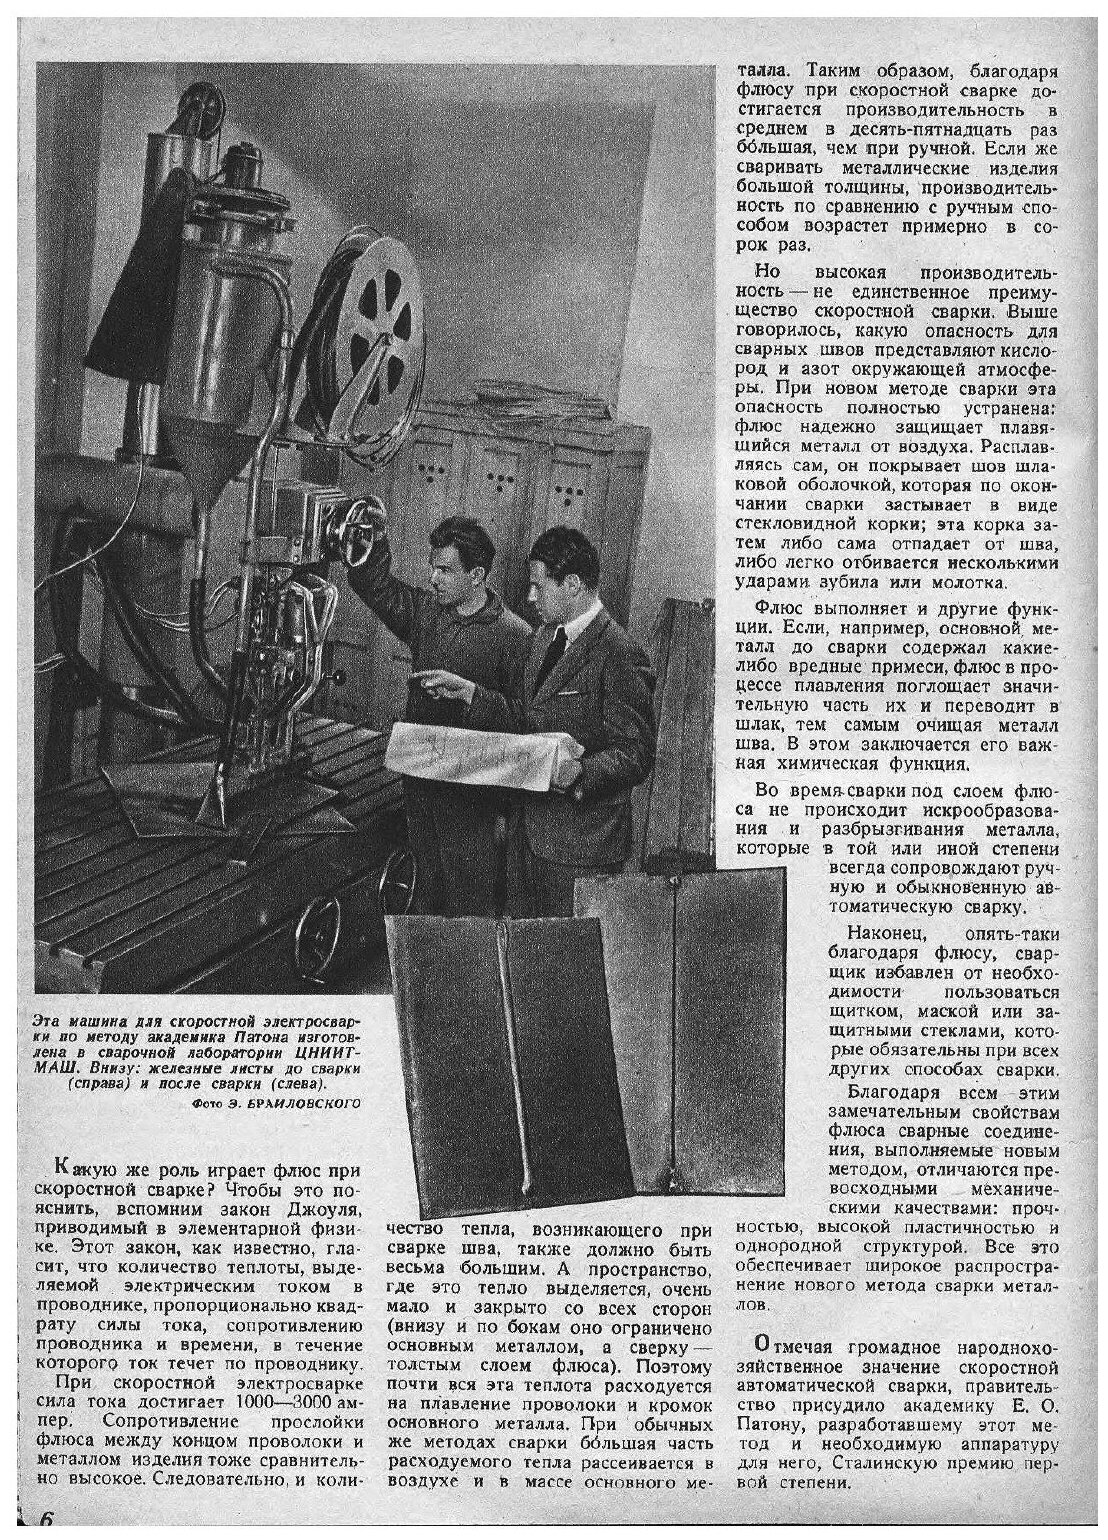 Журнал "Техника молодежи". № 06, 1941 - фото №5